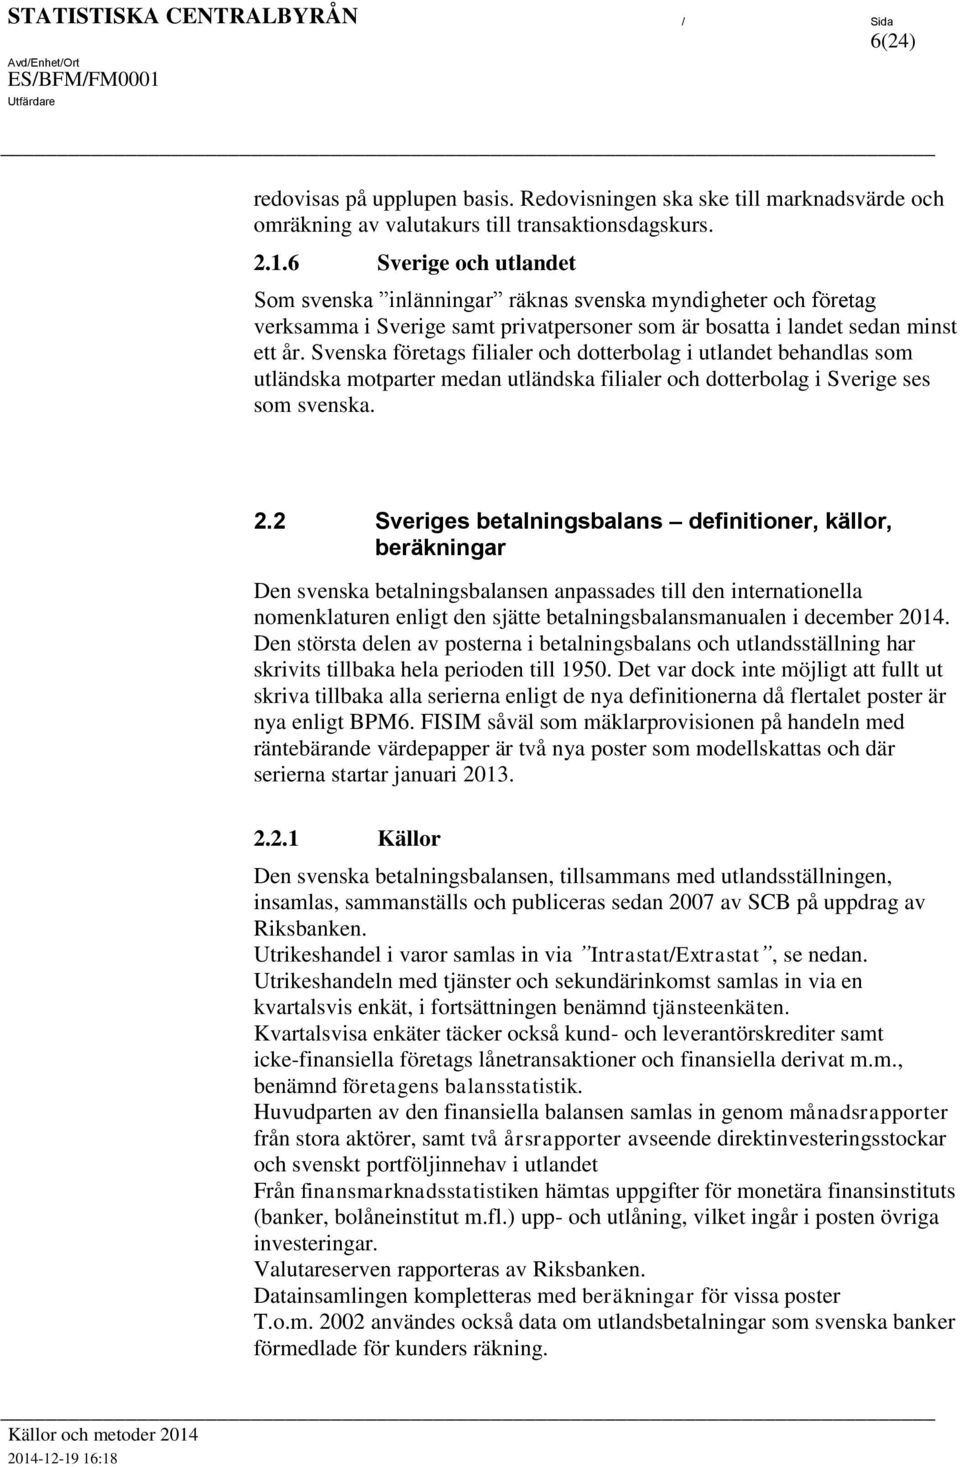 Svenska föreags filialer och doerbolag i ulande behandlas som uländska moparer medan uländska filialer och doerbolag i Sverige ses som svenska. 2.